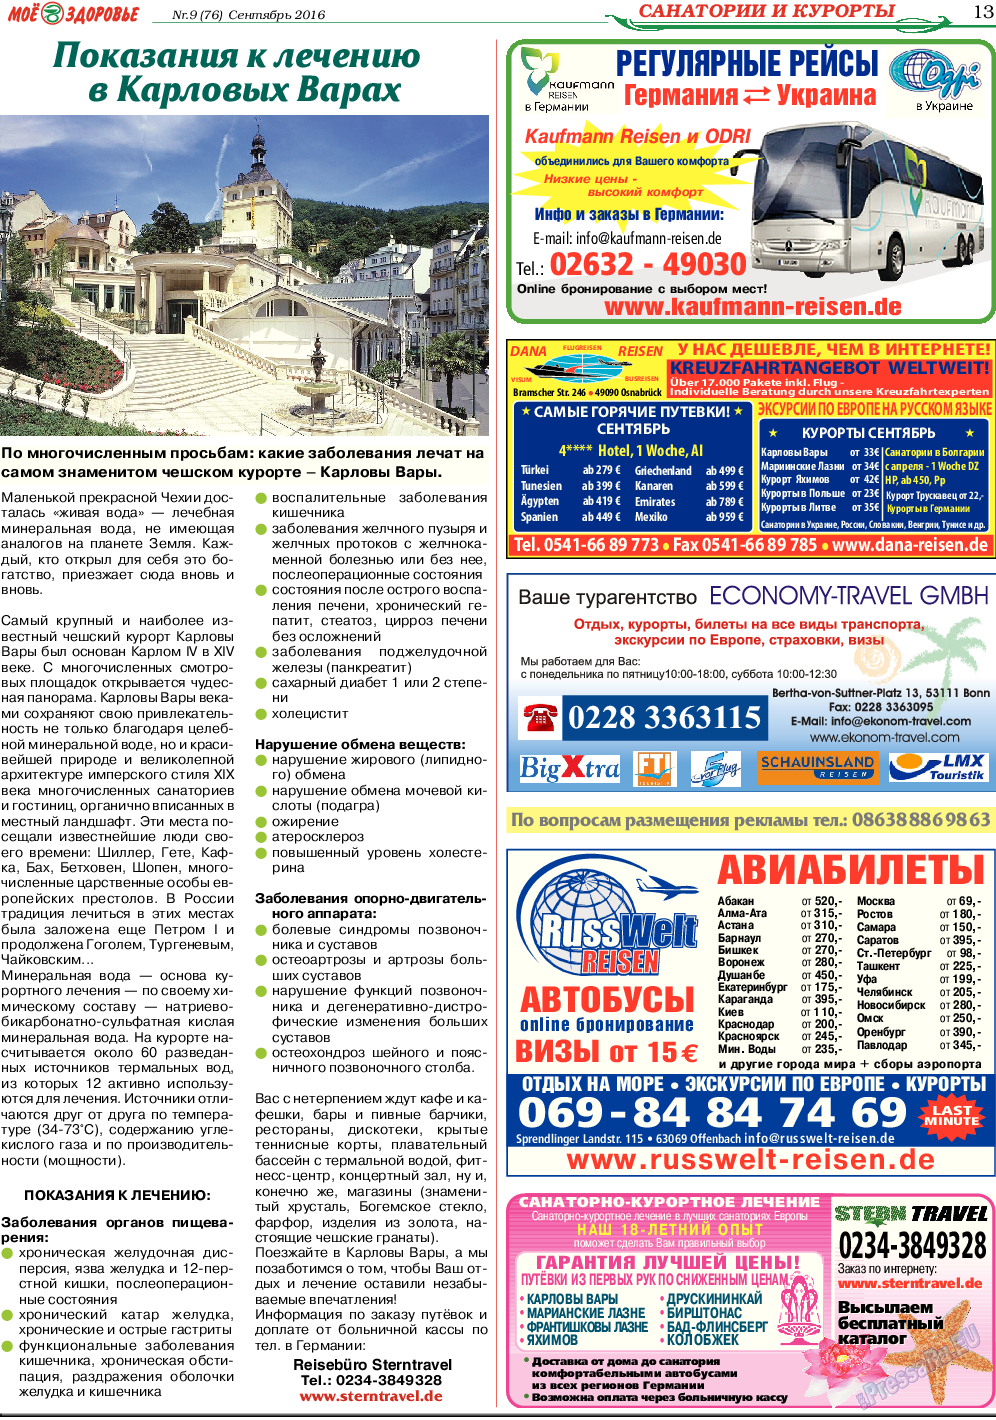 Кругозор, газета. 2016 №9 стр.13